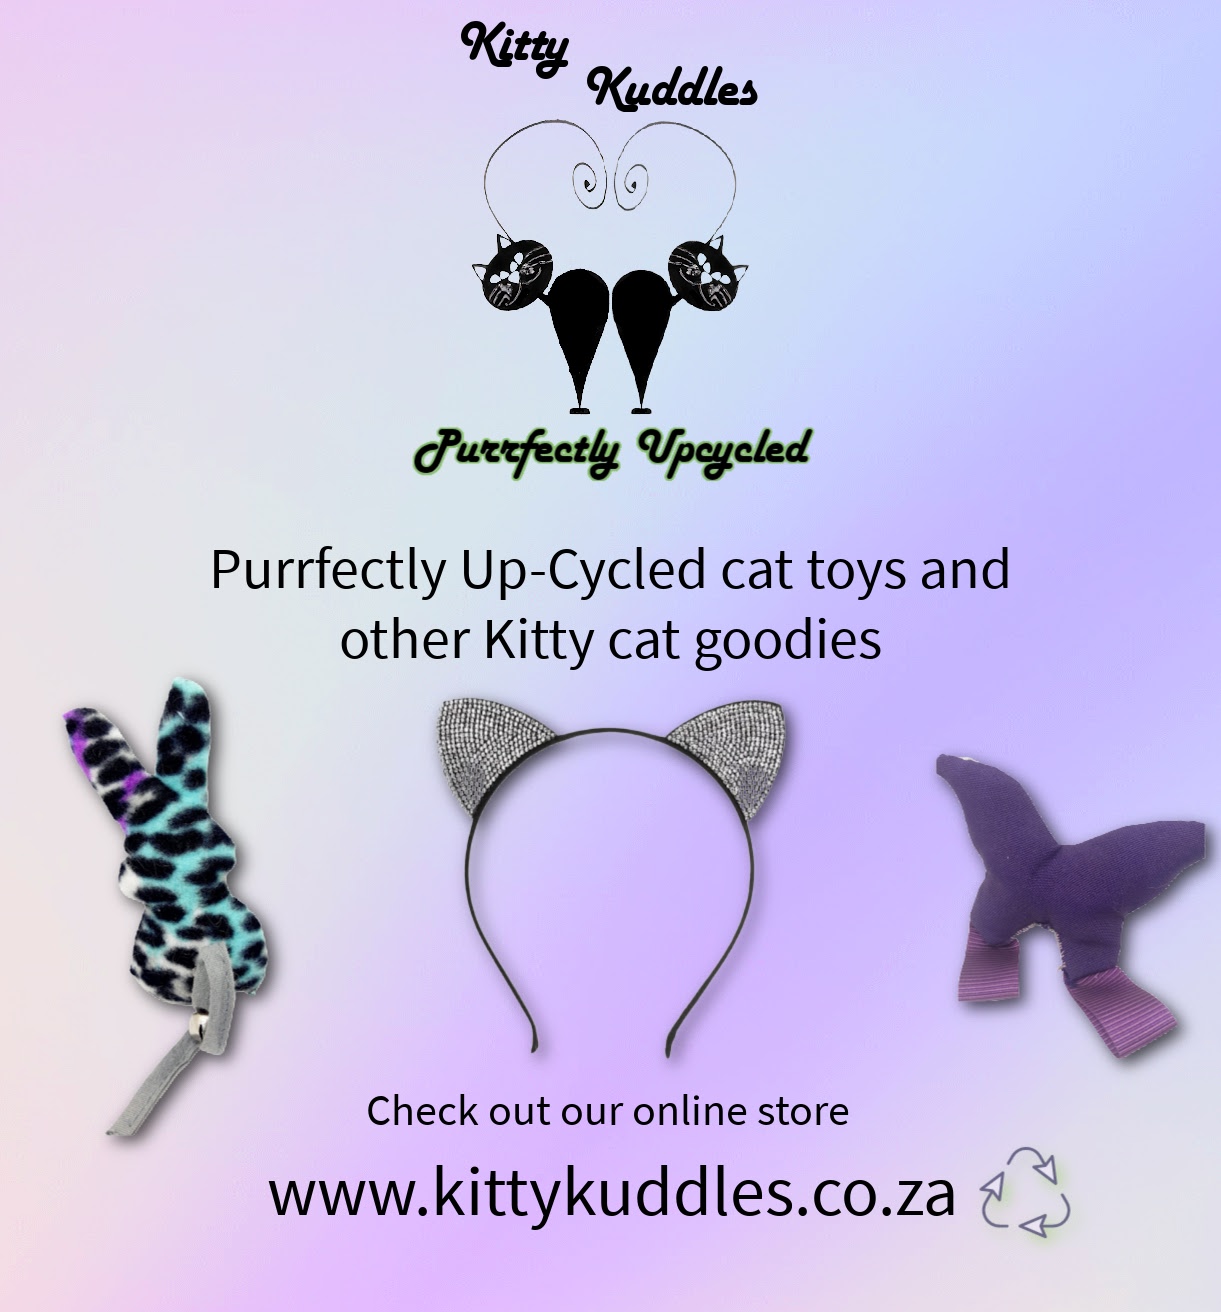 Kitty Kuddles AD